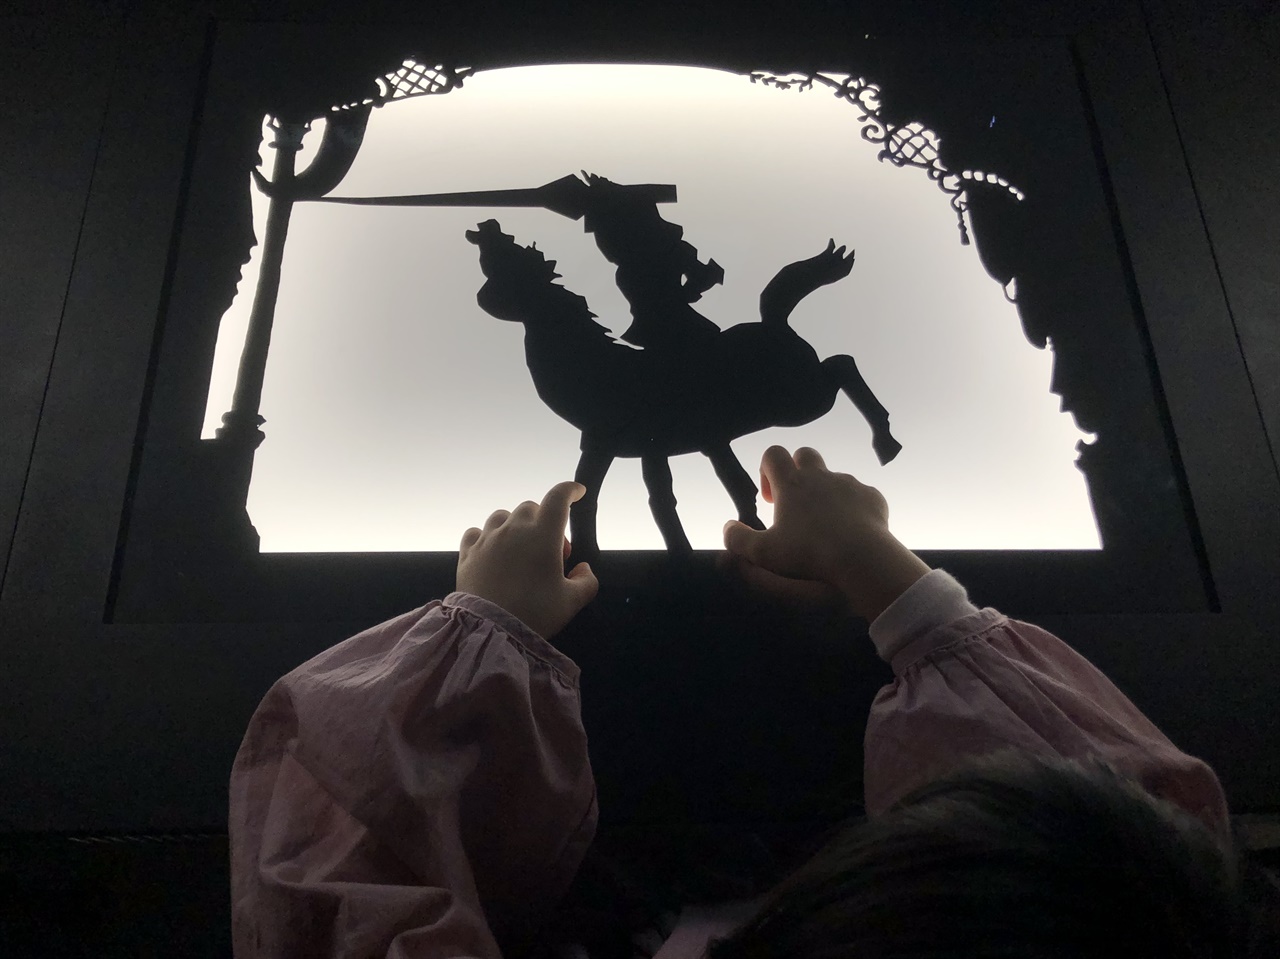 로테 라이니거의 작품 앞에는 관람객이 실루엣 애니메이션 제작을 체험해볼 수 있는 기기가 마련되어 있다. 여섯 살 아이가 이 체험을 굉장히 좋아했다.